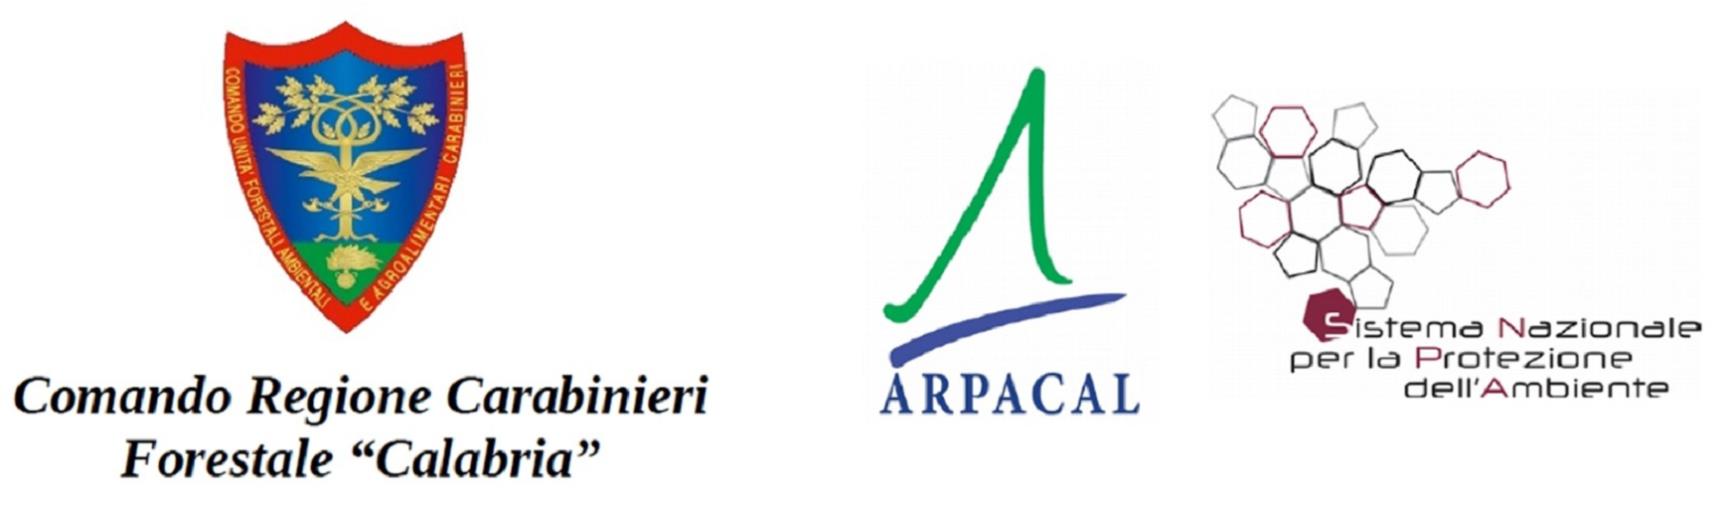 images Martedì sarà firmato il protocollo fra Arpacal e Carabinieri "Forestale" per l'allertamento delle valanghe